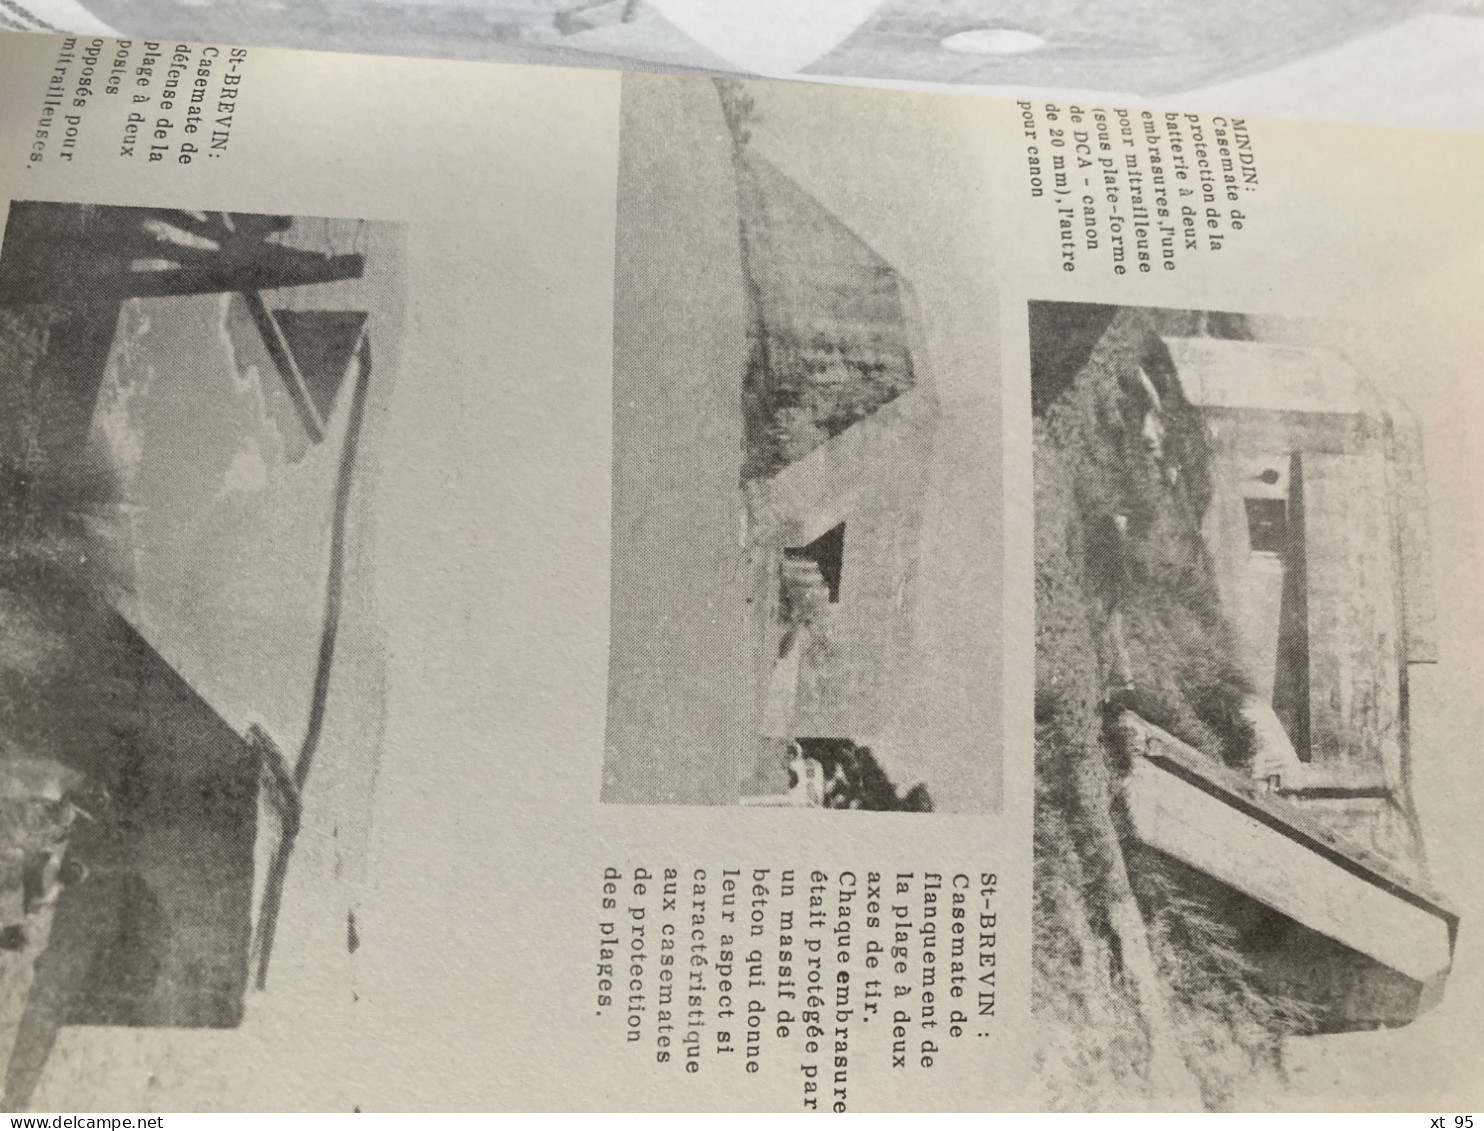 La Forteresse de Saint Nazaire - 1940-1945 - Paul Gamelin - 1980 - 116 pages